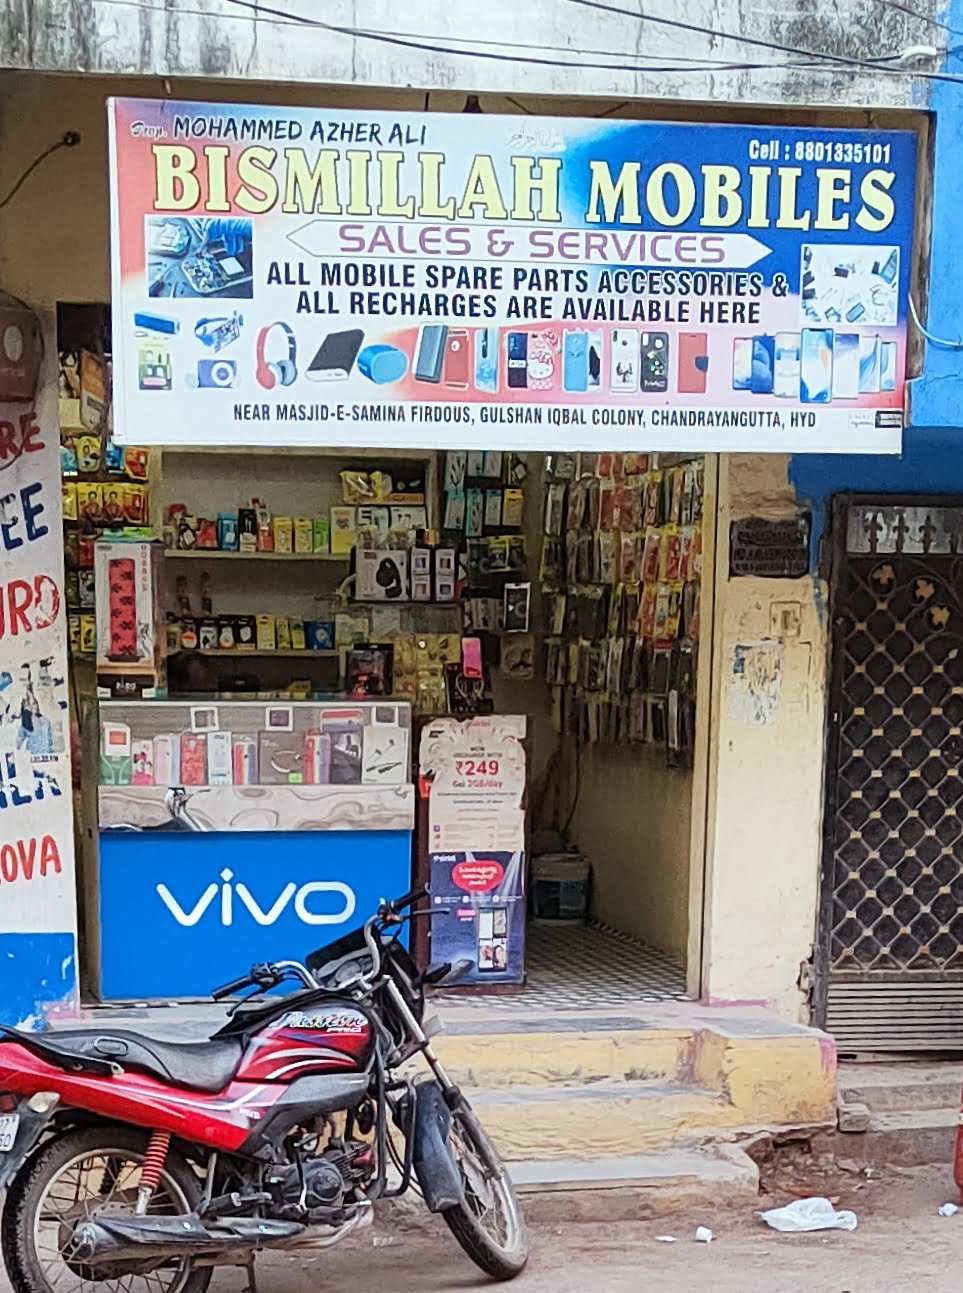 Bismillah Mobiles